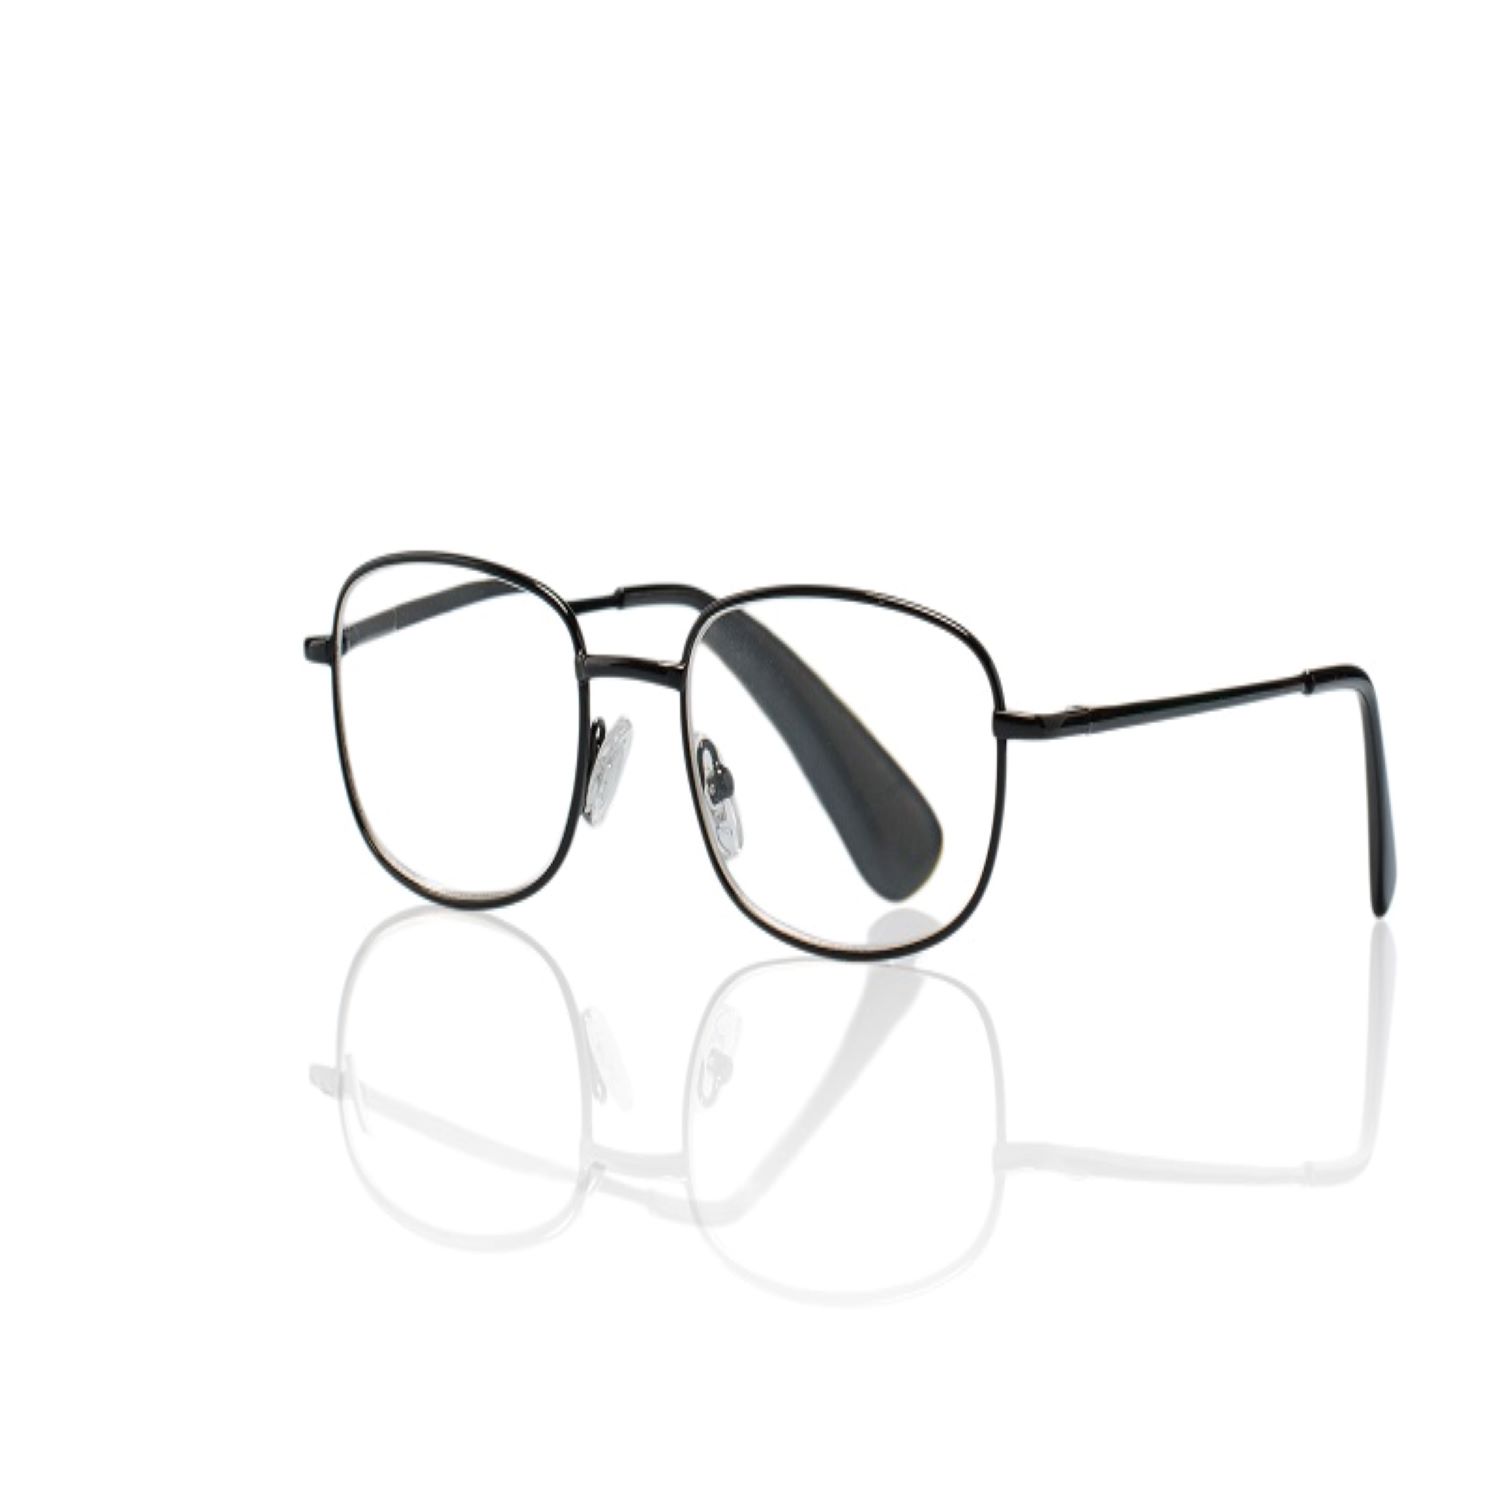 Очки корригирующие для чтения темно-серые металлические полукруглые +2,0 очки корригирующие для чтения темно серые металл прямоугольные 1 0